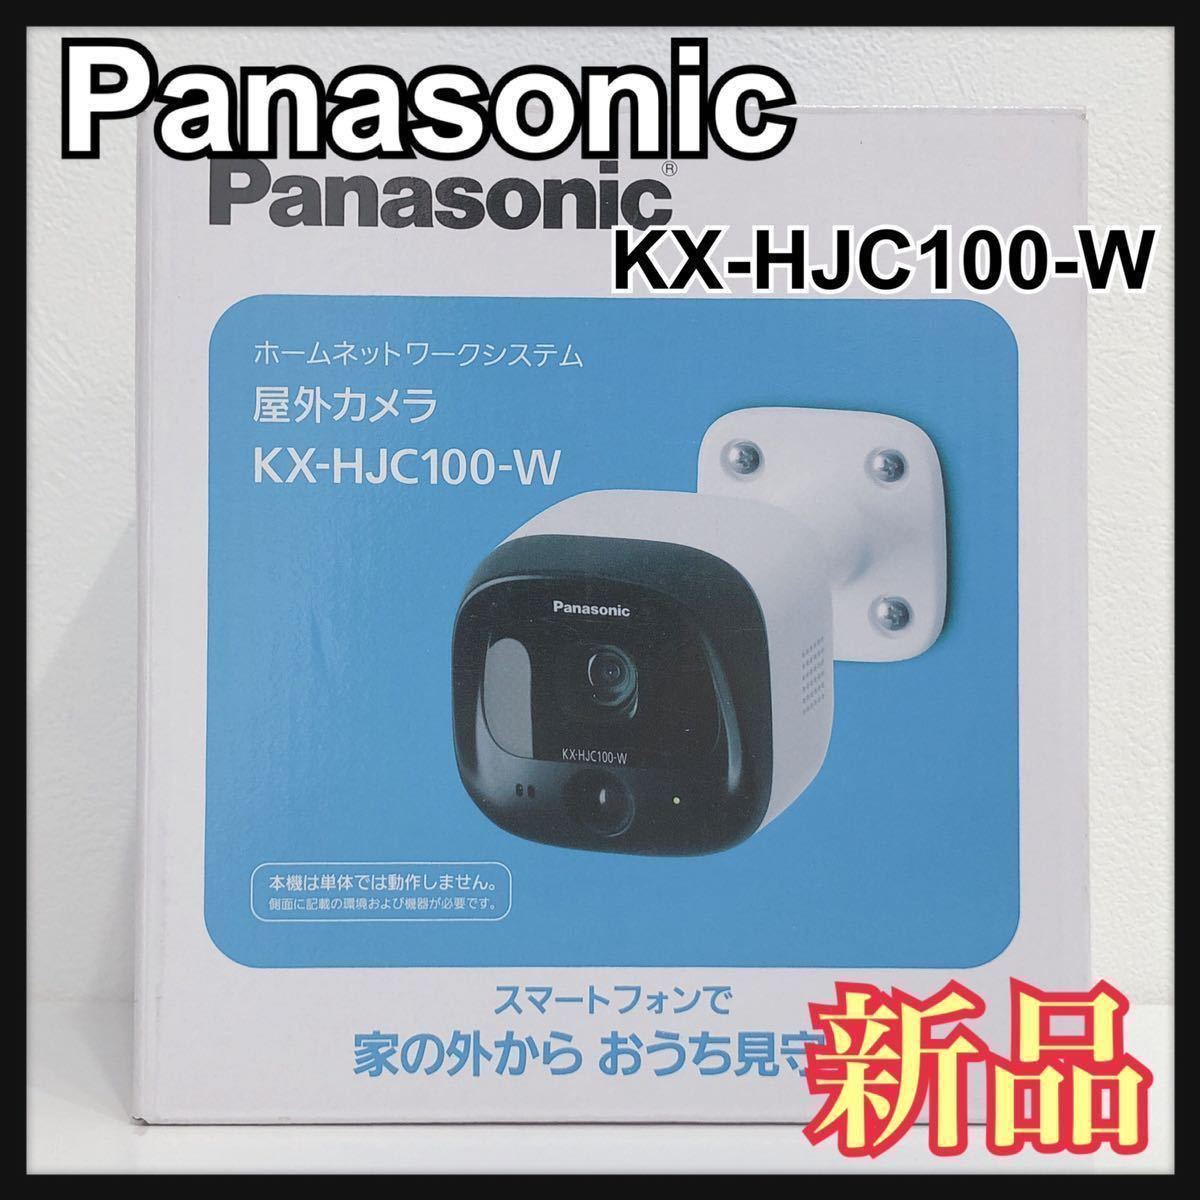 ☆新品未開封☆ Panasonic パナソニック 屋外カメラ ホワイト 1台入り KX-HJC100-W ホームネットワークシステム 送料無料